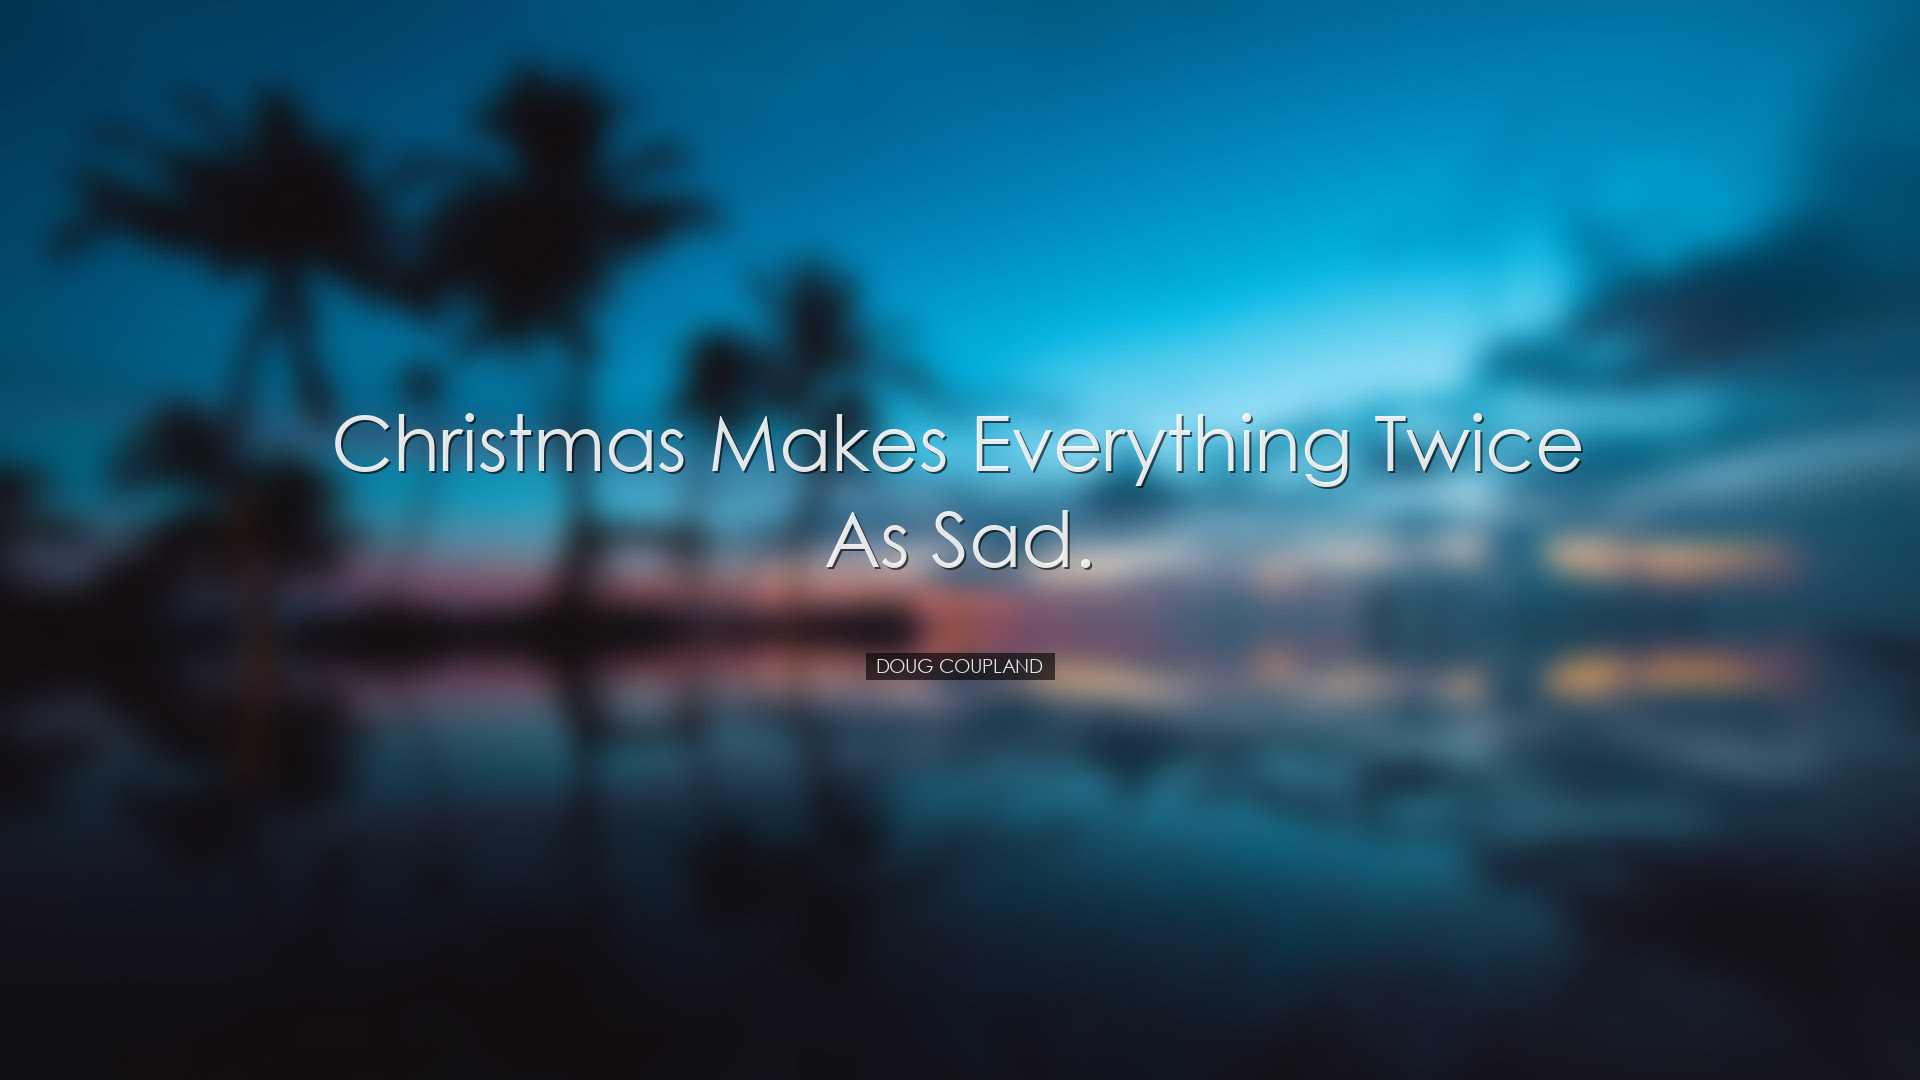 Christmas makes everything twice as sad. - Doug Coupland